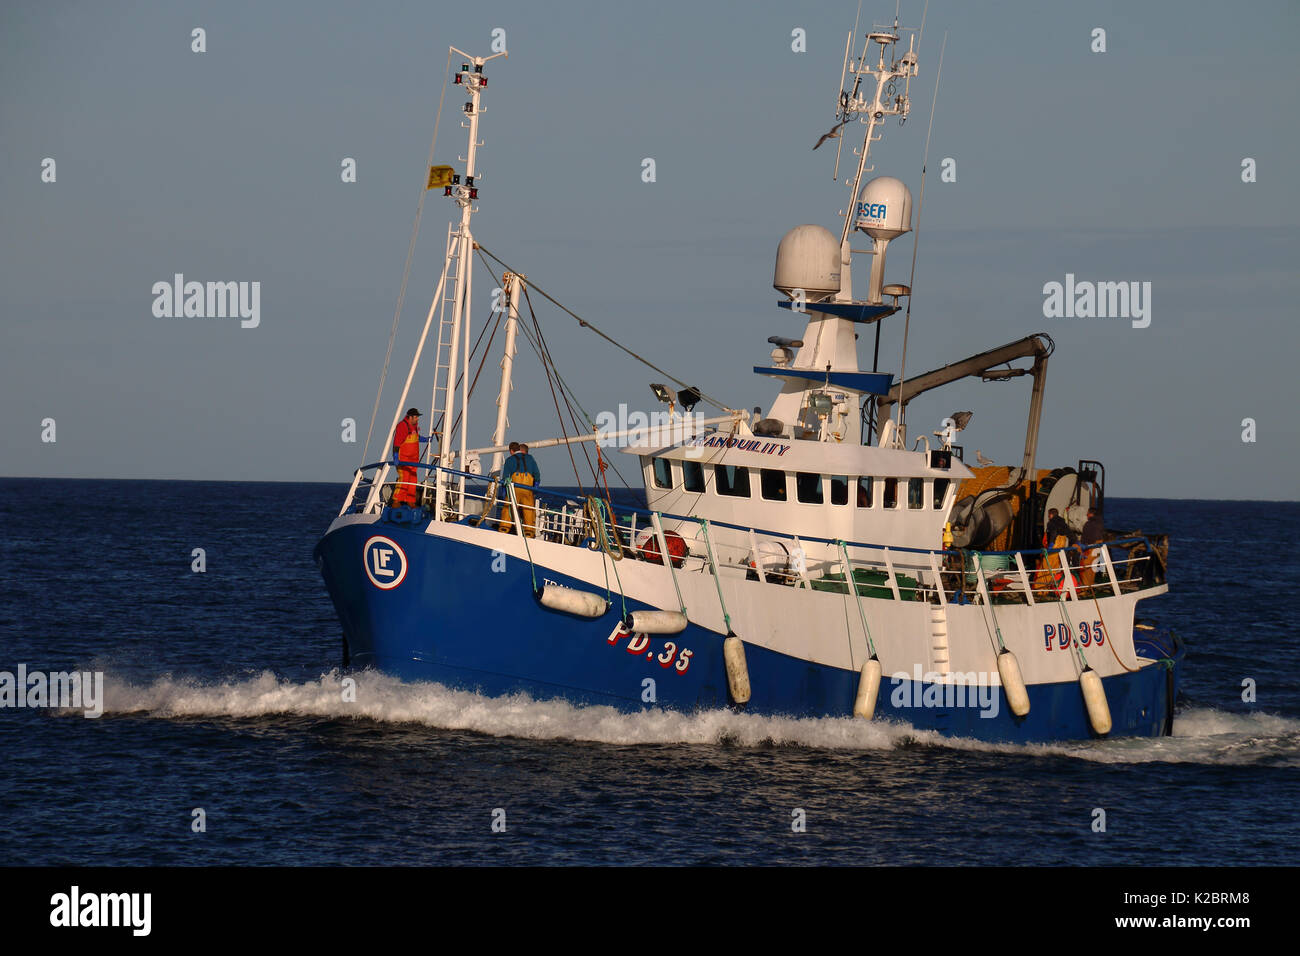 Bateau de pêche 'tranquillité', Mer du Nord, septembre 2014. Tous les non-usages de rédaction doivent être effacés individuellement. Banque D'Images